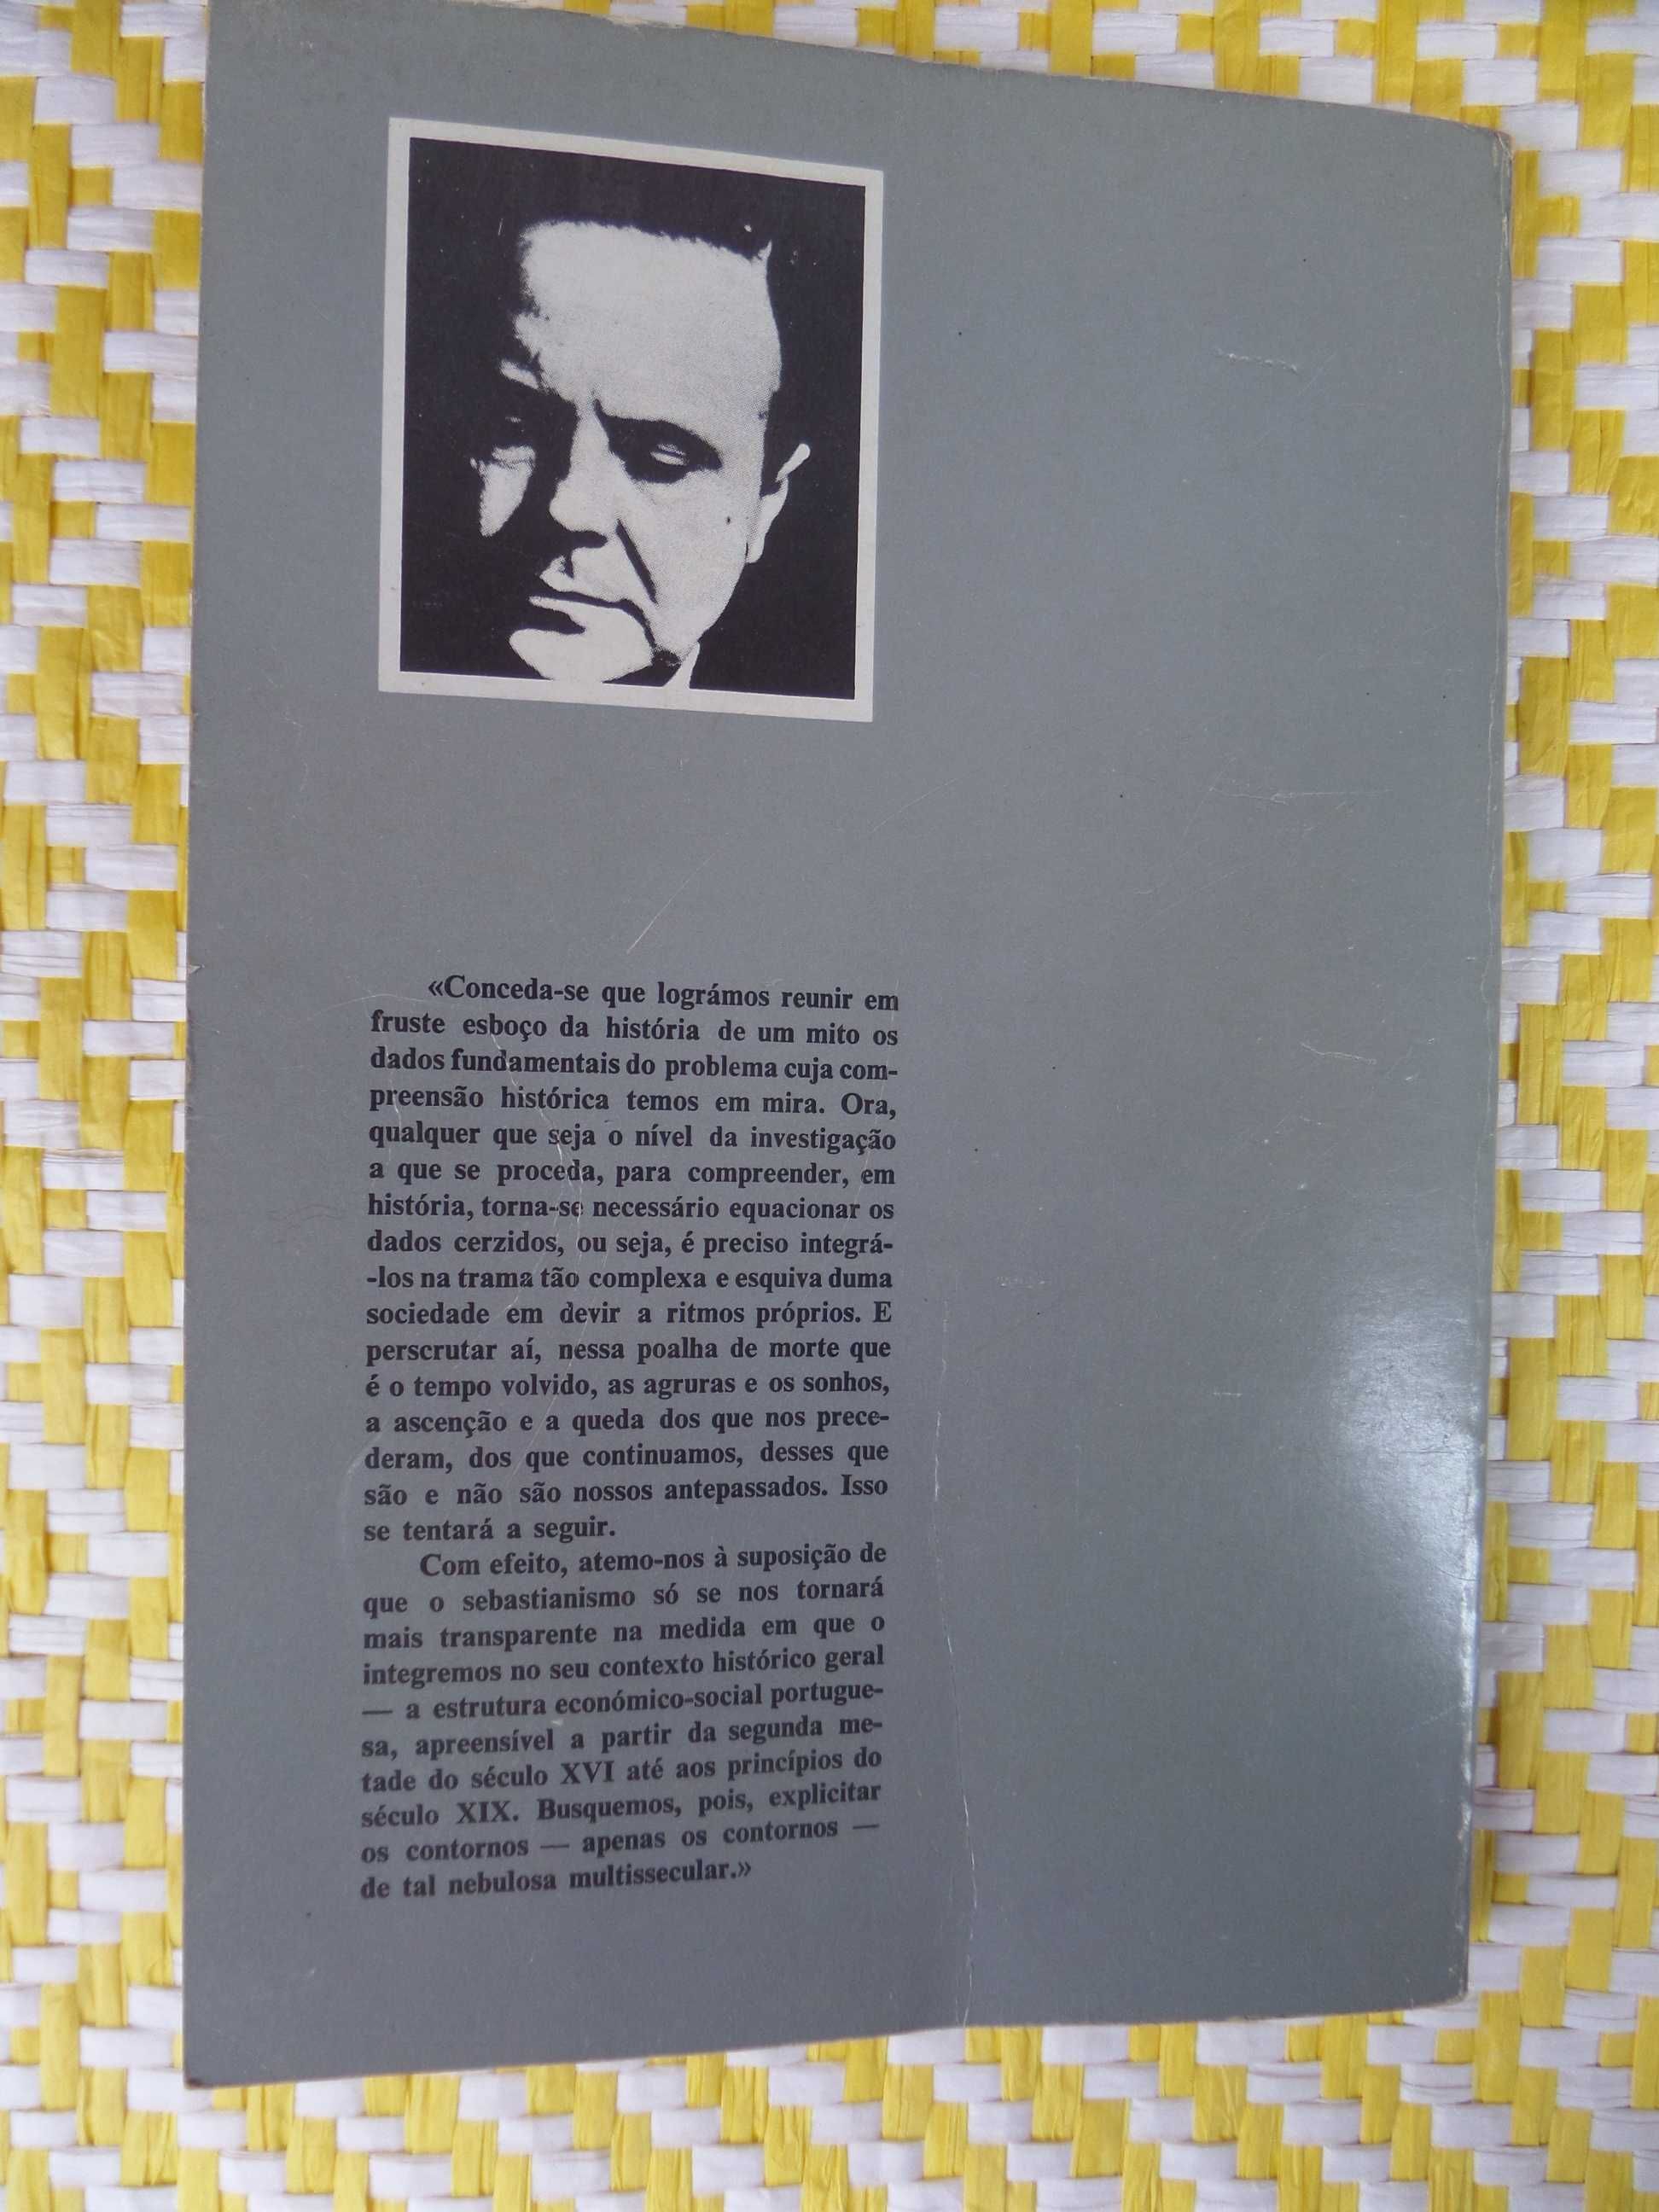 DO SEBASTIANISMO AO SOCIALISMO 
Joel Serrão
Livros Horizonte – 1983